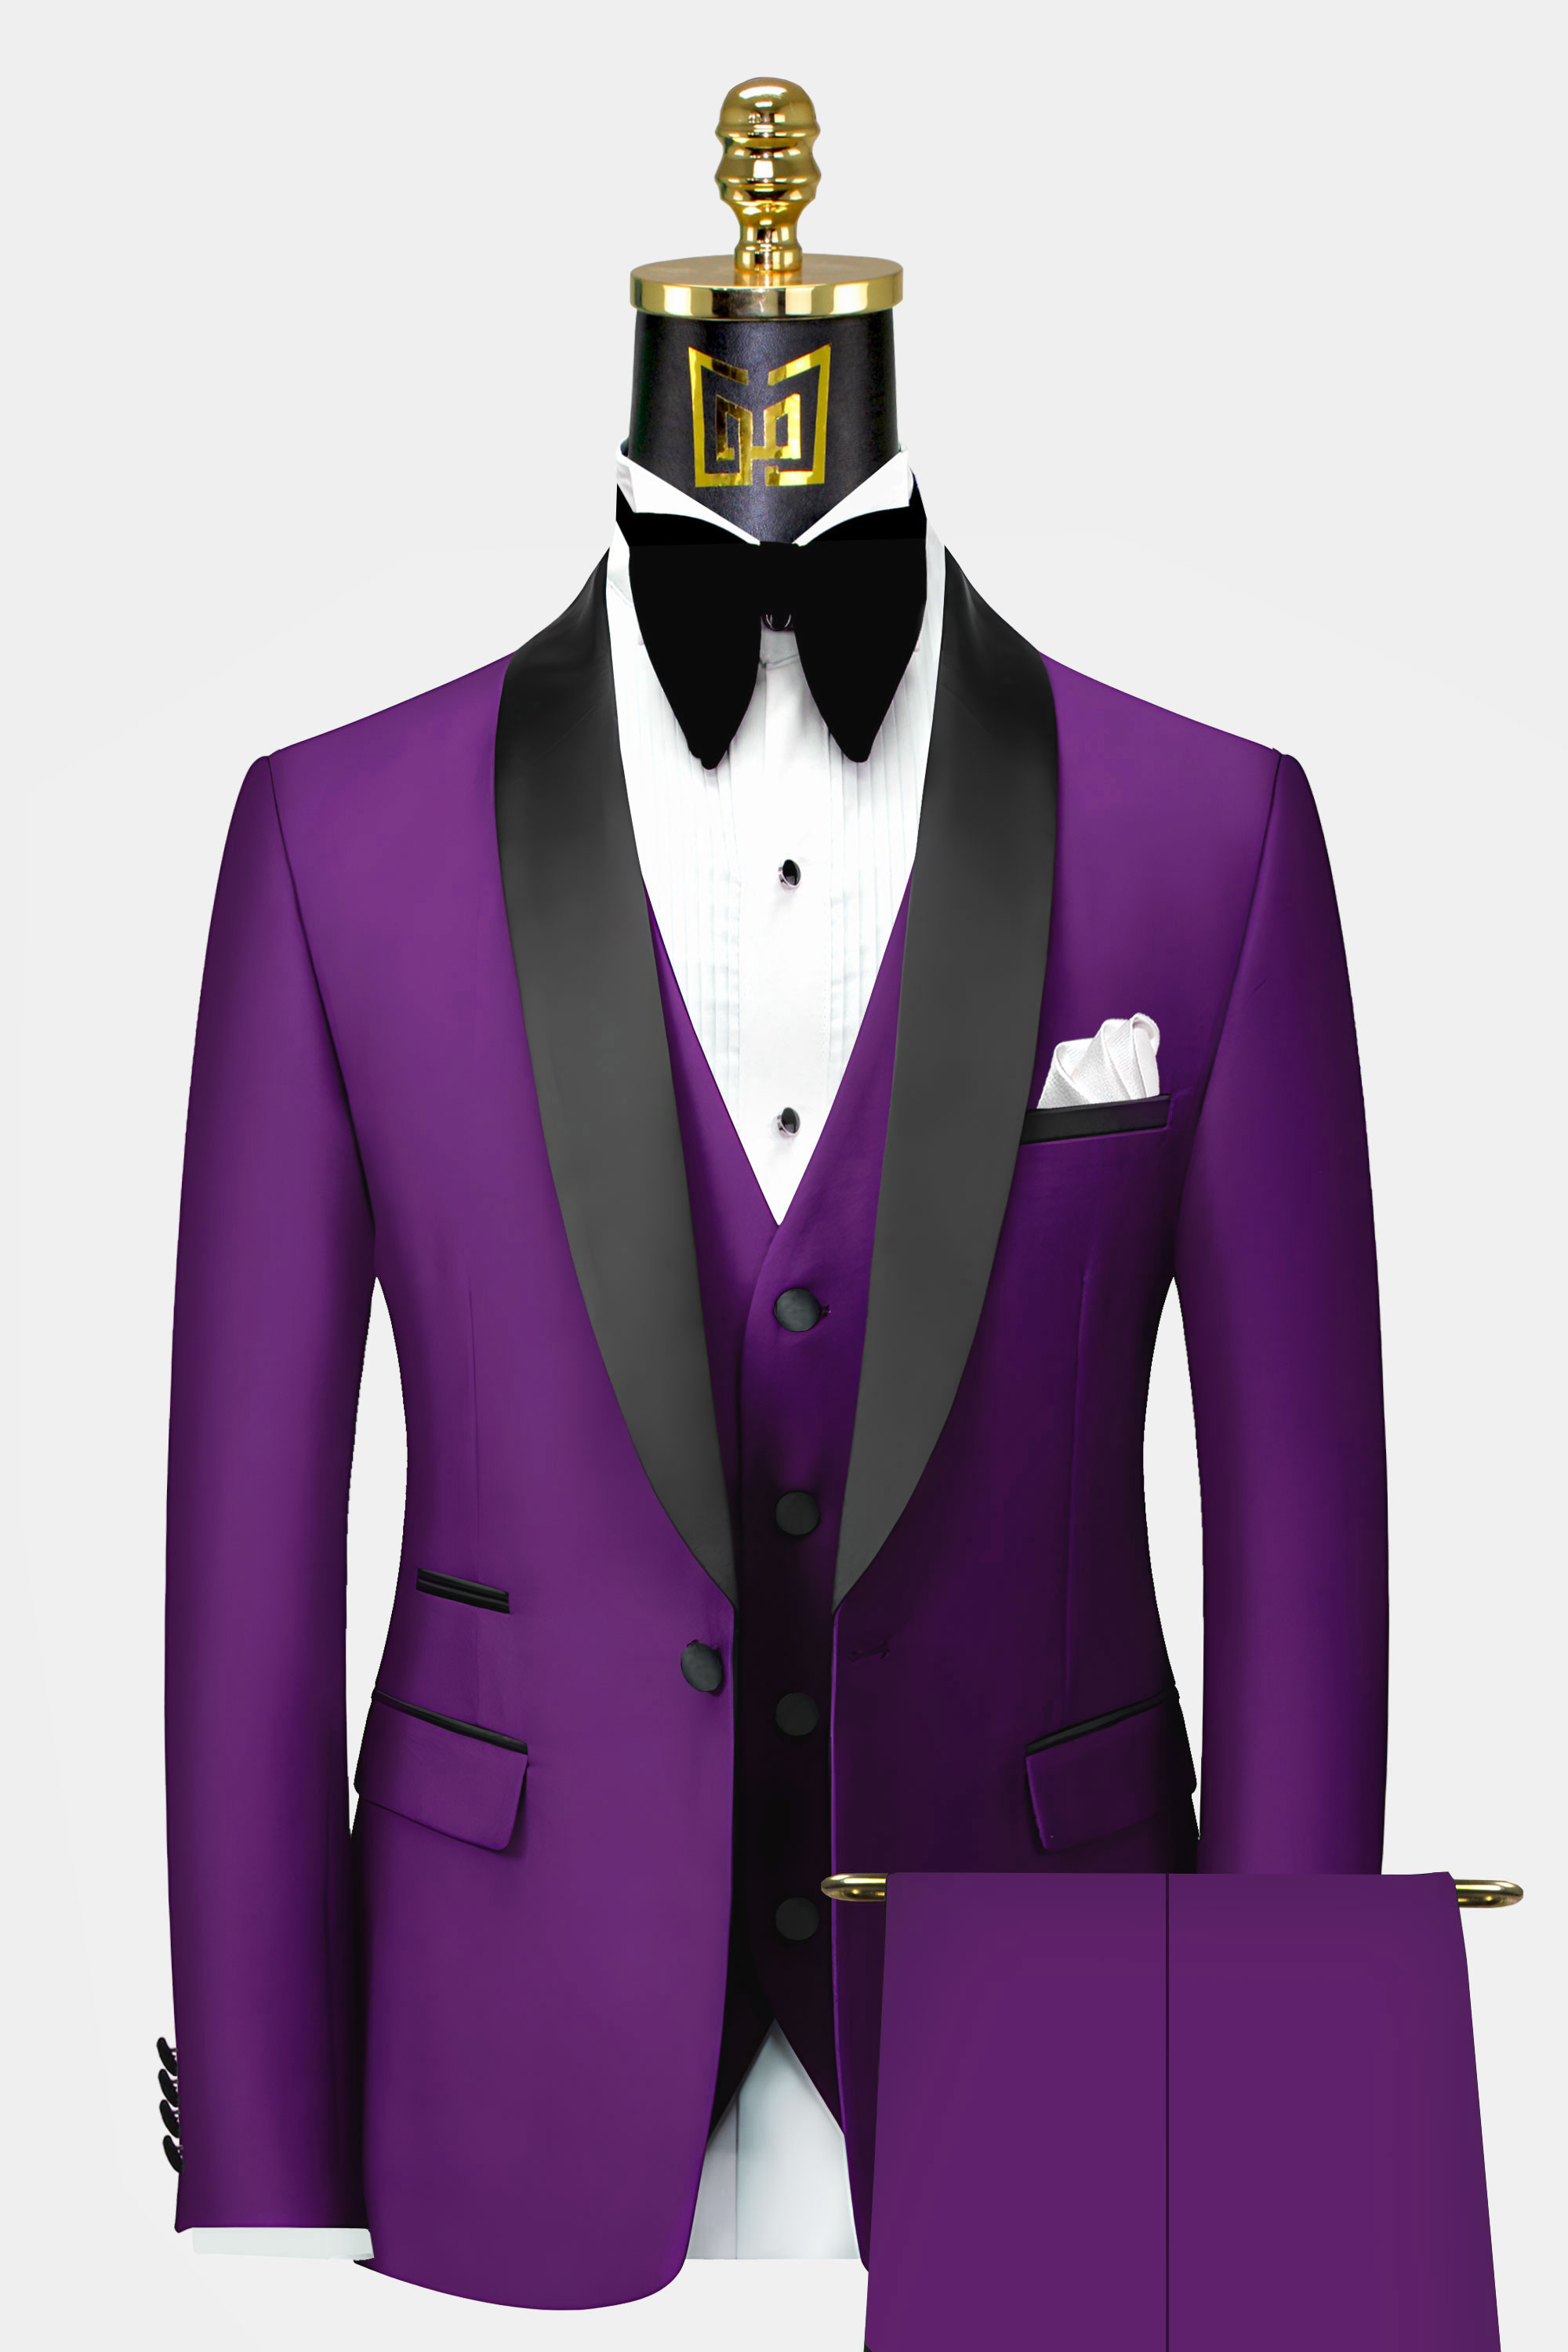 Mens-Purple-Tuxedo-Suit-Groom-Wedding-Prom-Suit-from-Gentlermansguru.com